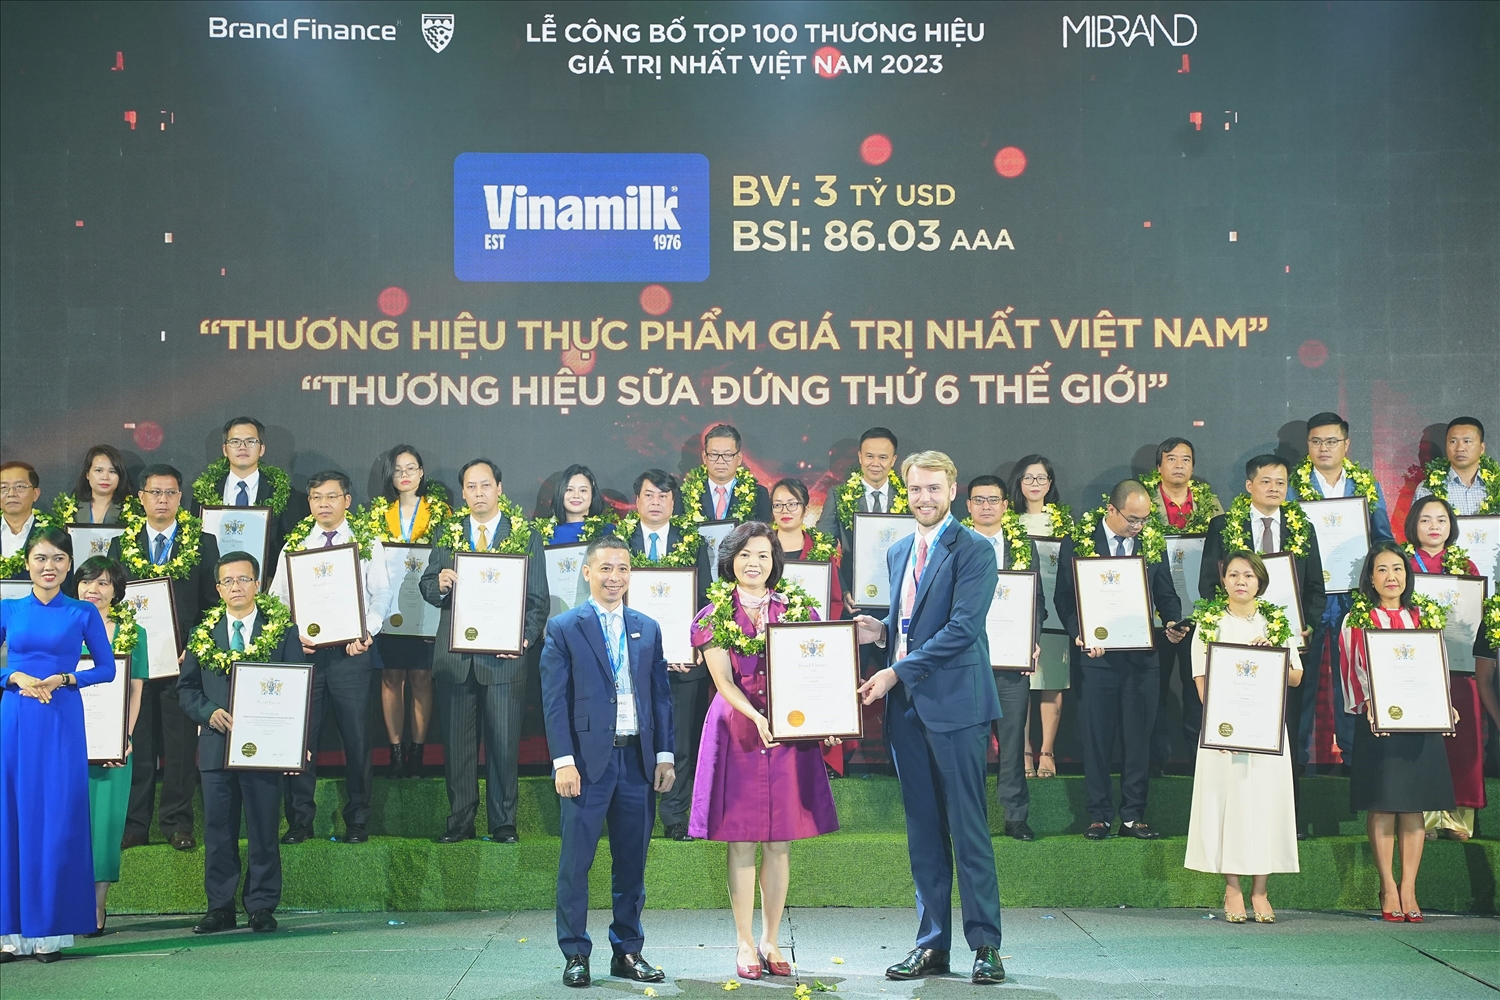 Vinamilk được vinh danh là Thương hiệu sữa đứng thứ 6 thế giới tại Lễ công bố Top 100 thương hiệu có giá trị nhất Việt Nam 2023 vừa qua